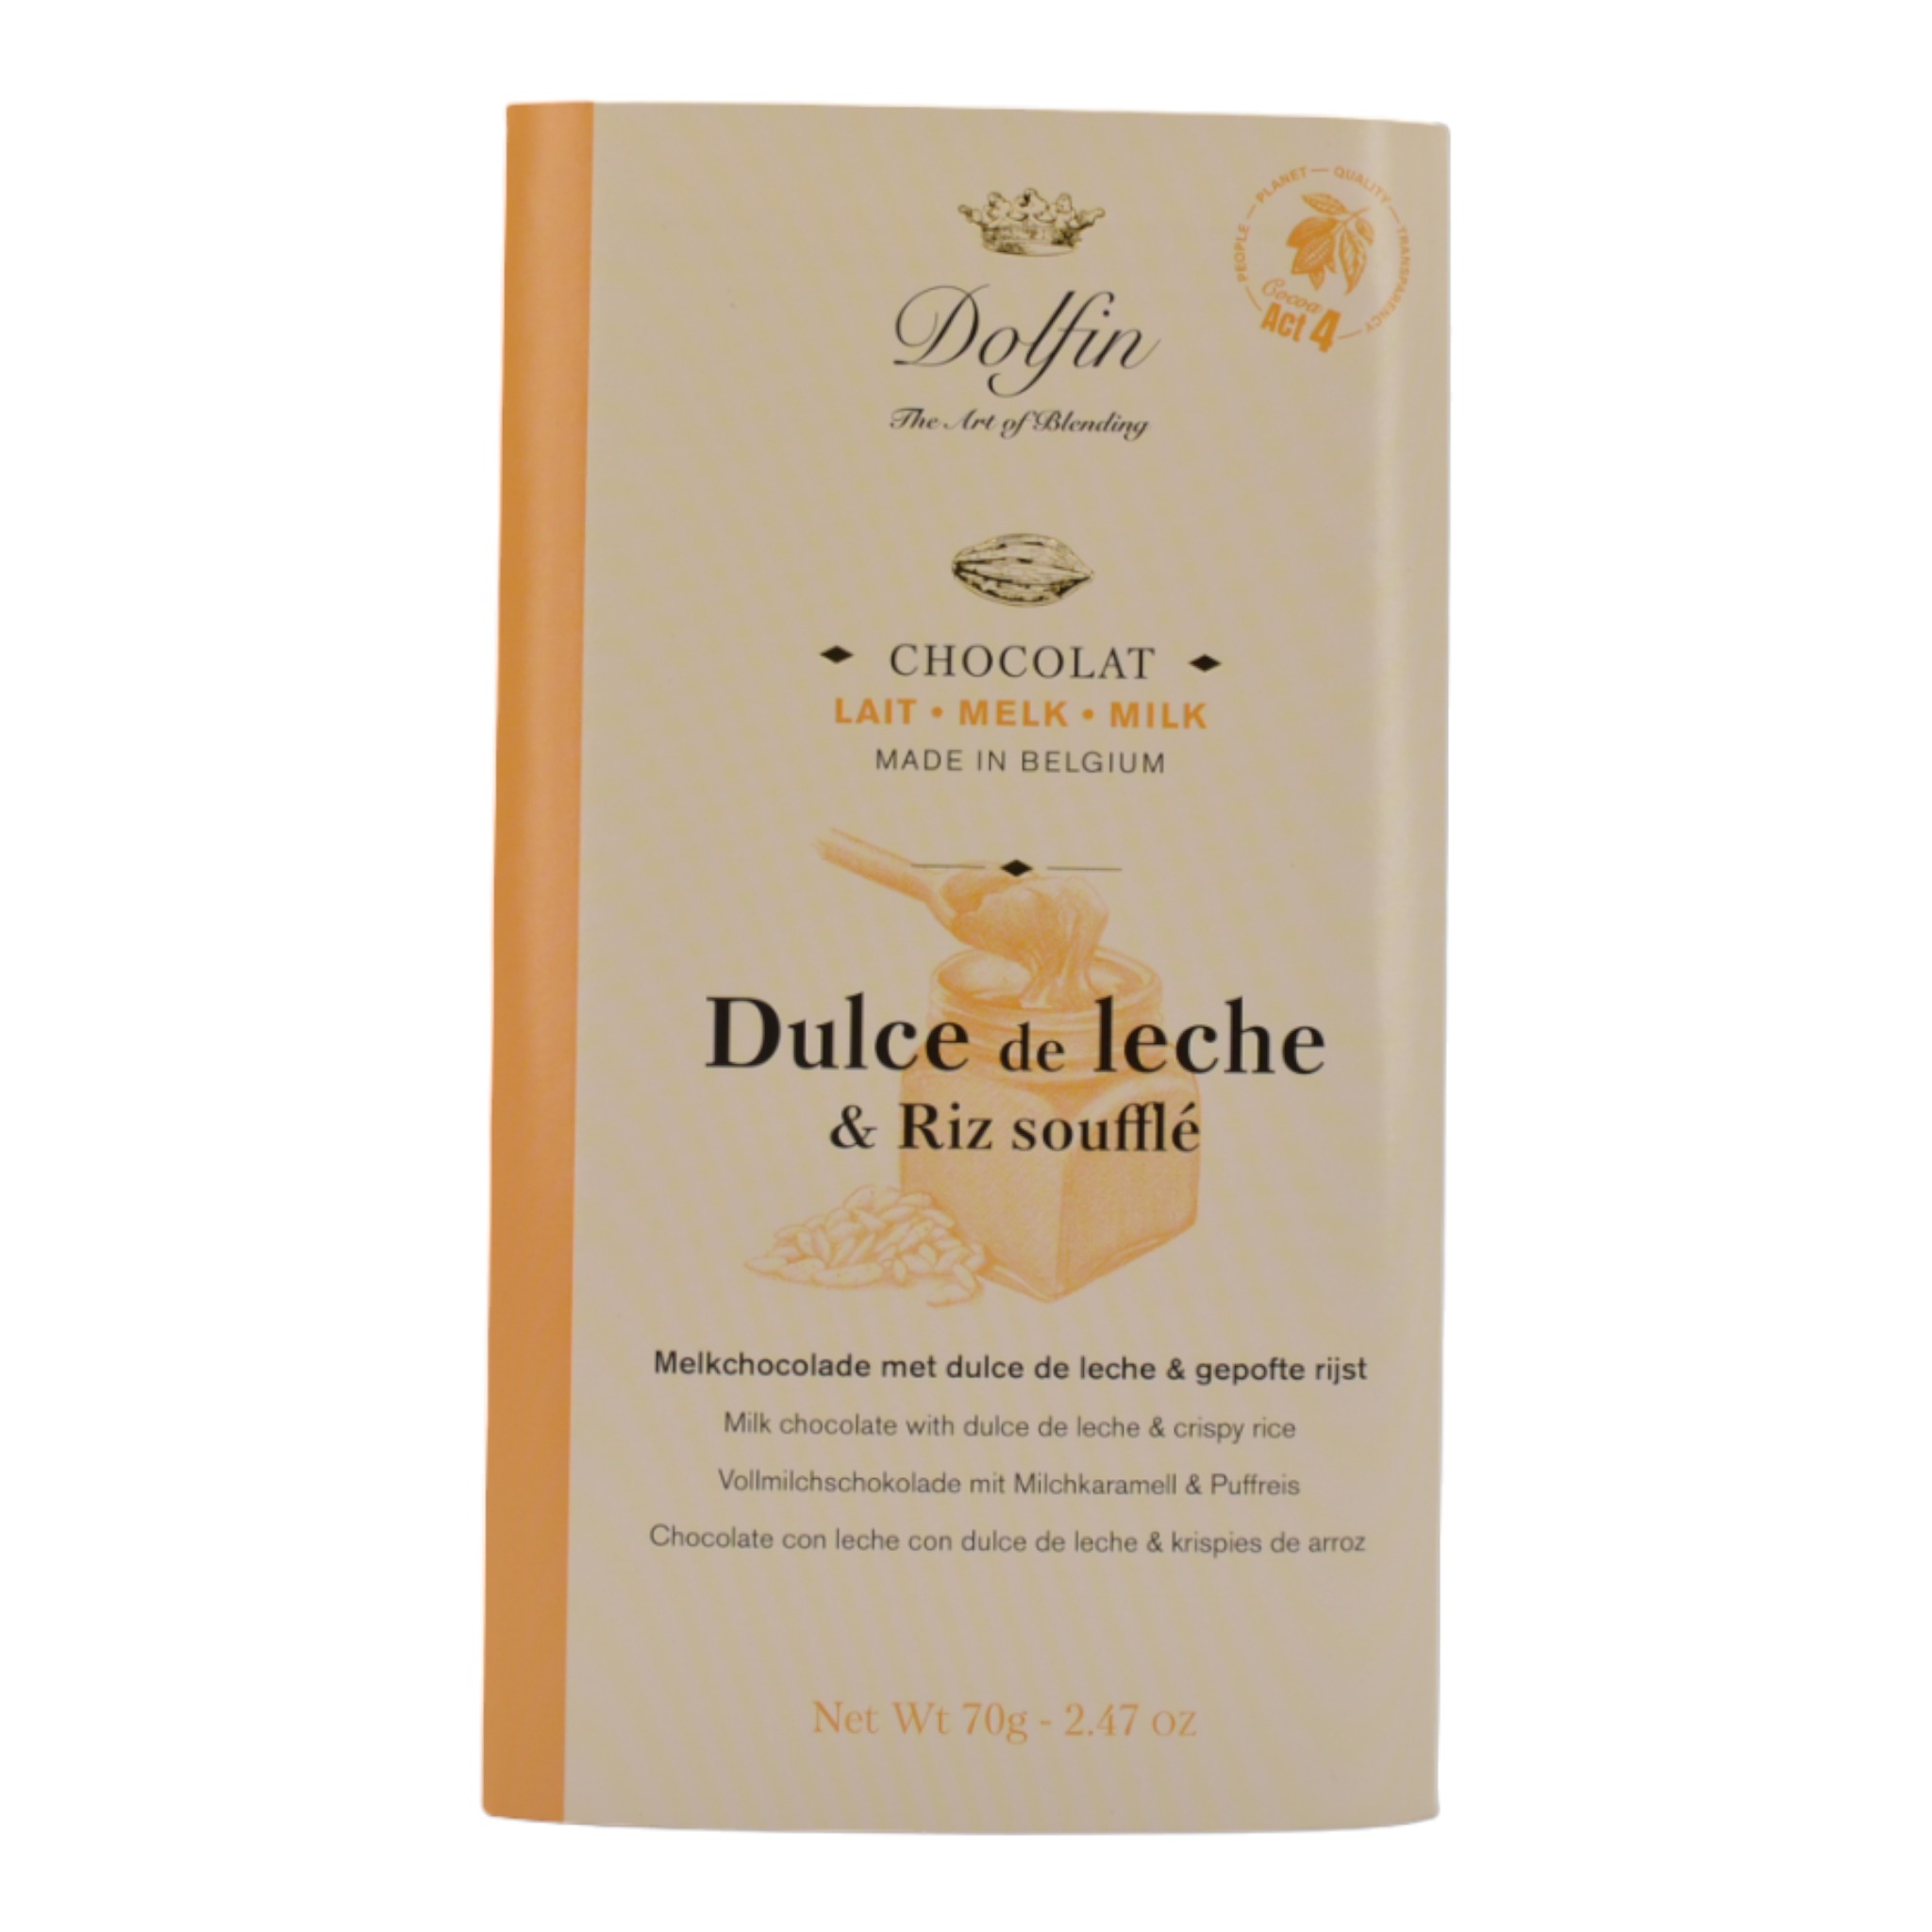 5413415912670Dolfin Lait Chocolate Dulce de Leche en Riz Souffle f